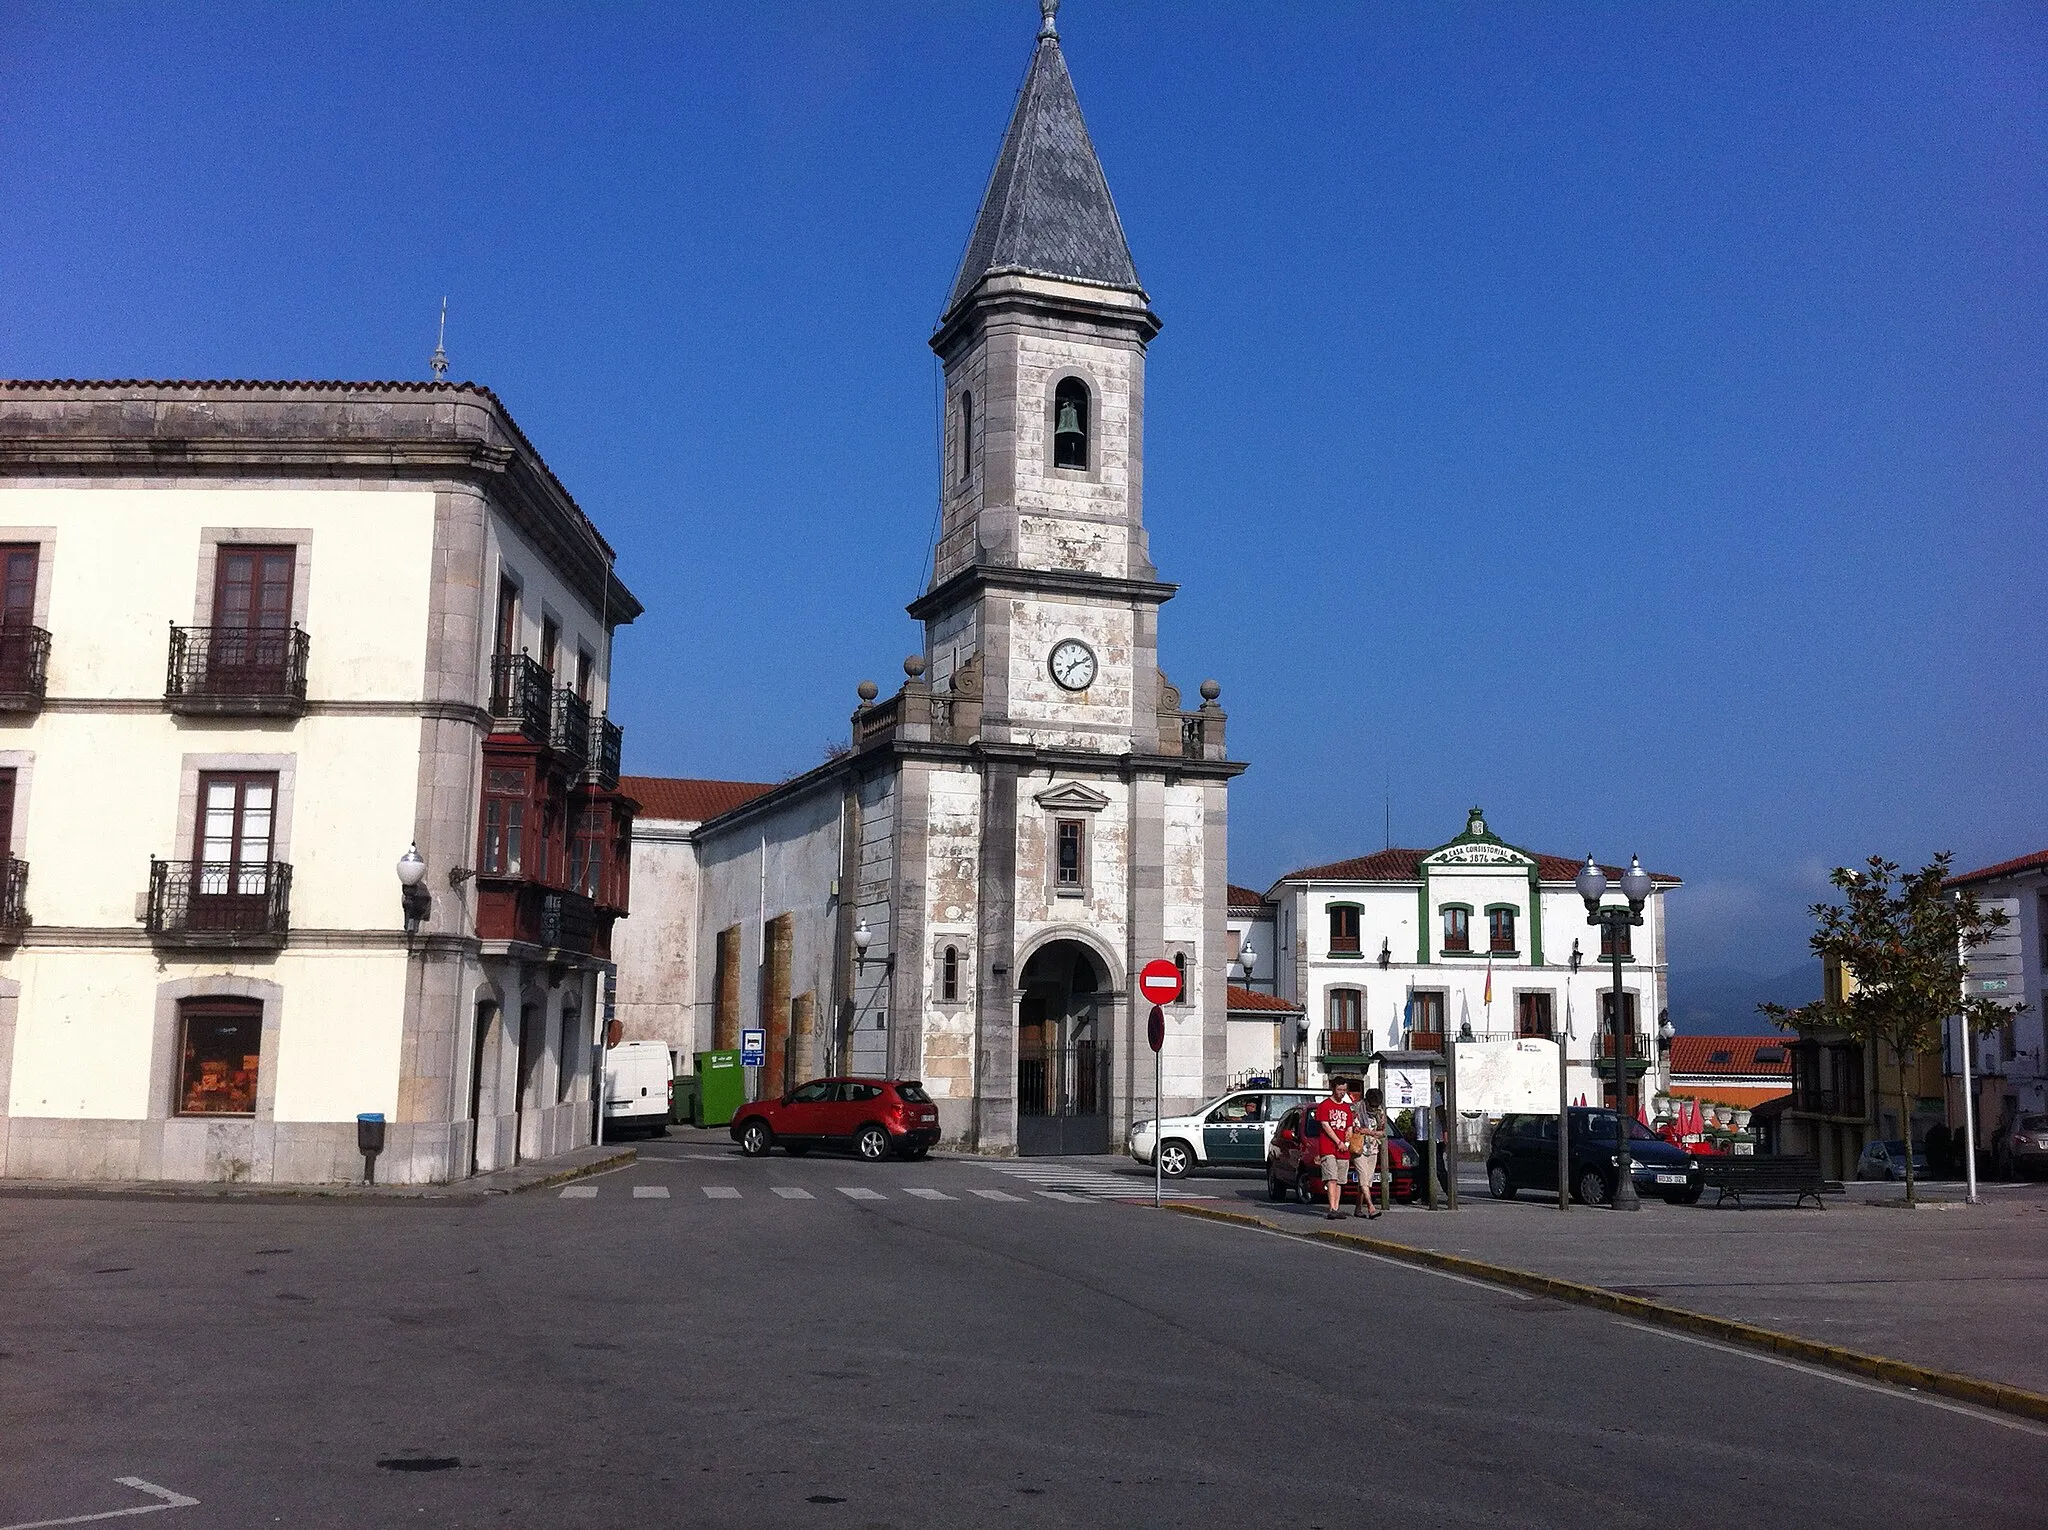 Image de Principado de Asturias